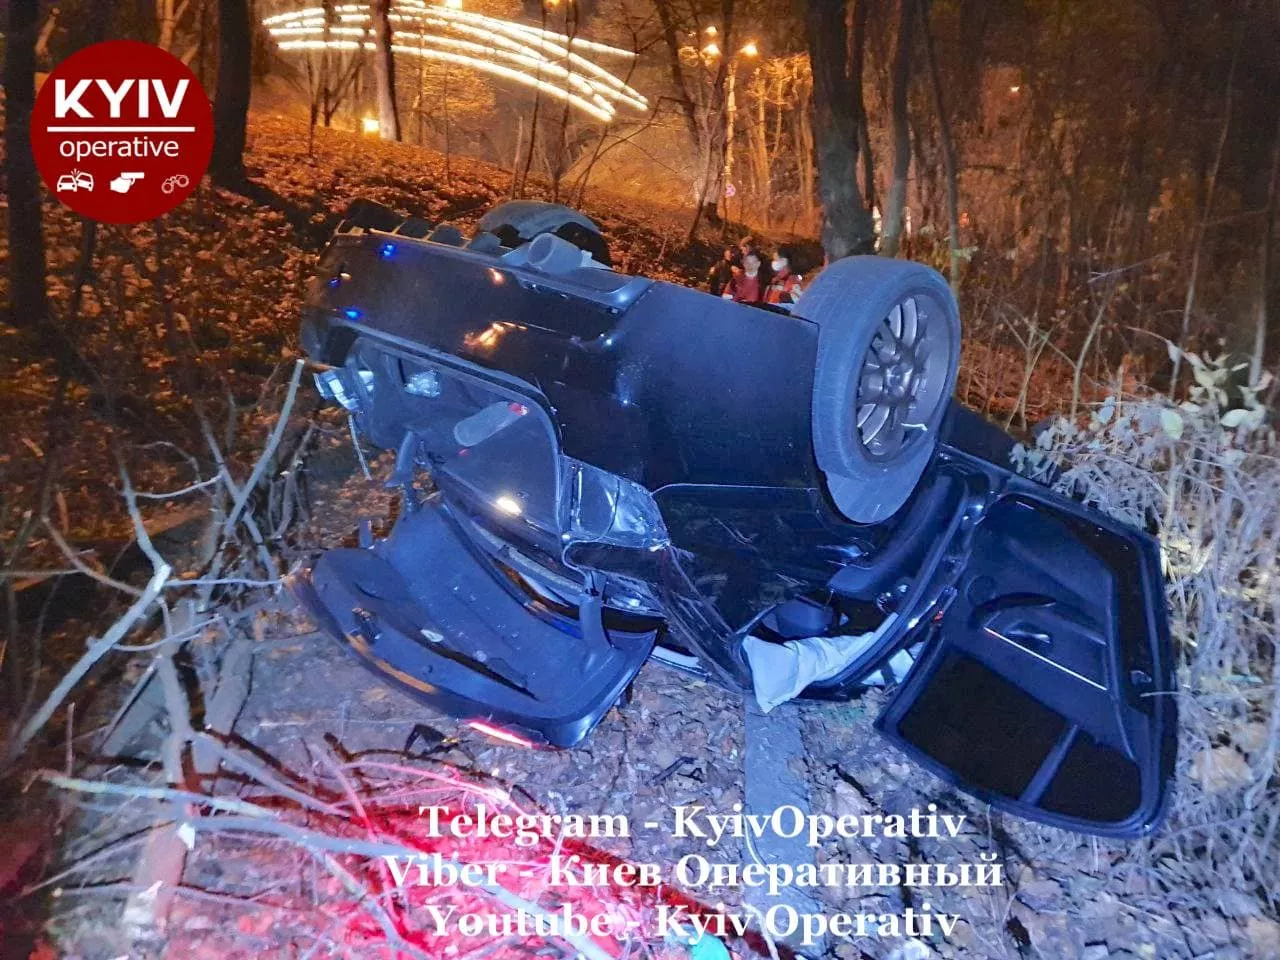 Автомобиль перевернулся сразу после того, как слетел с дороги/Фото: Telegram/Киев оперативный